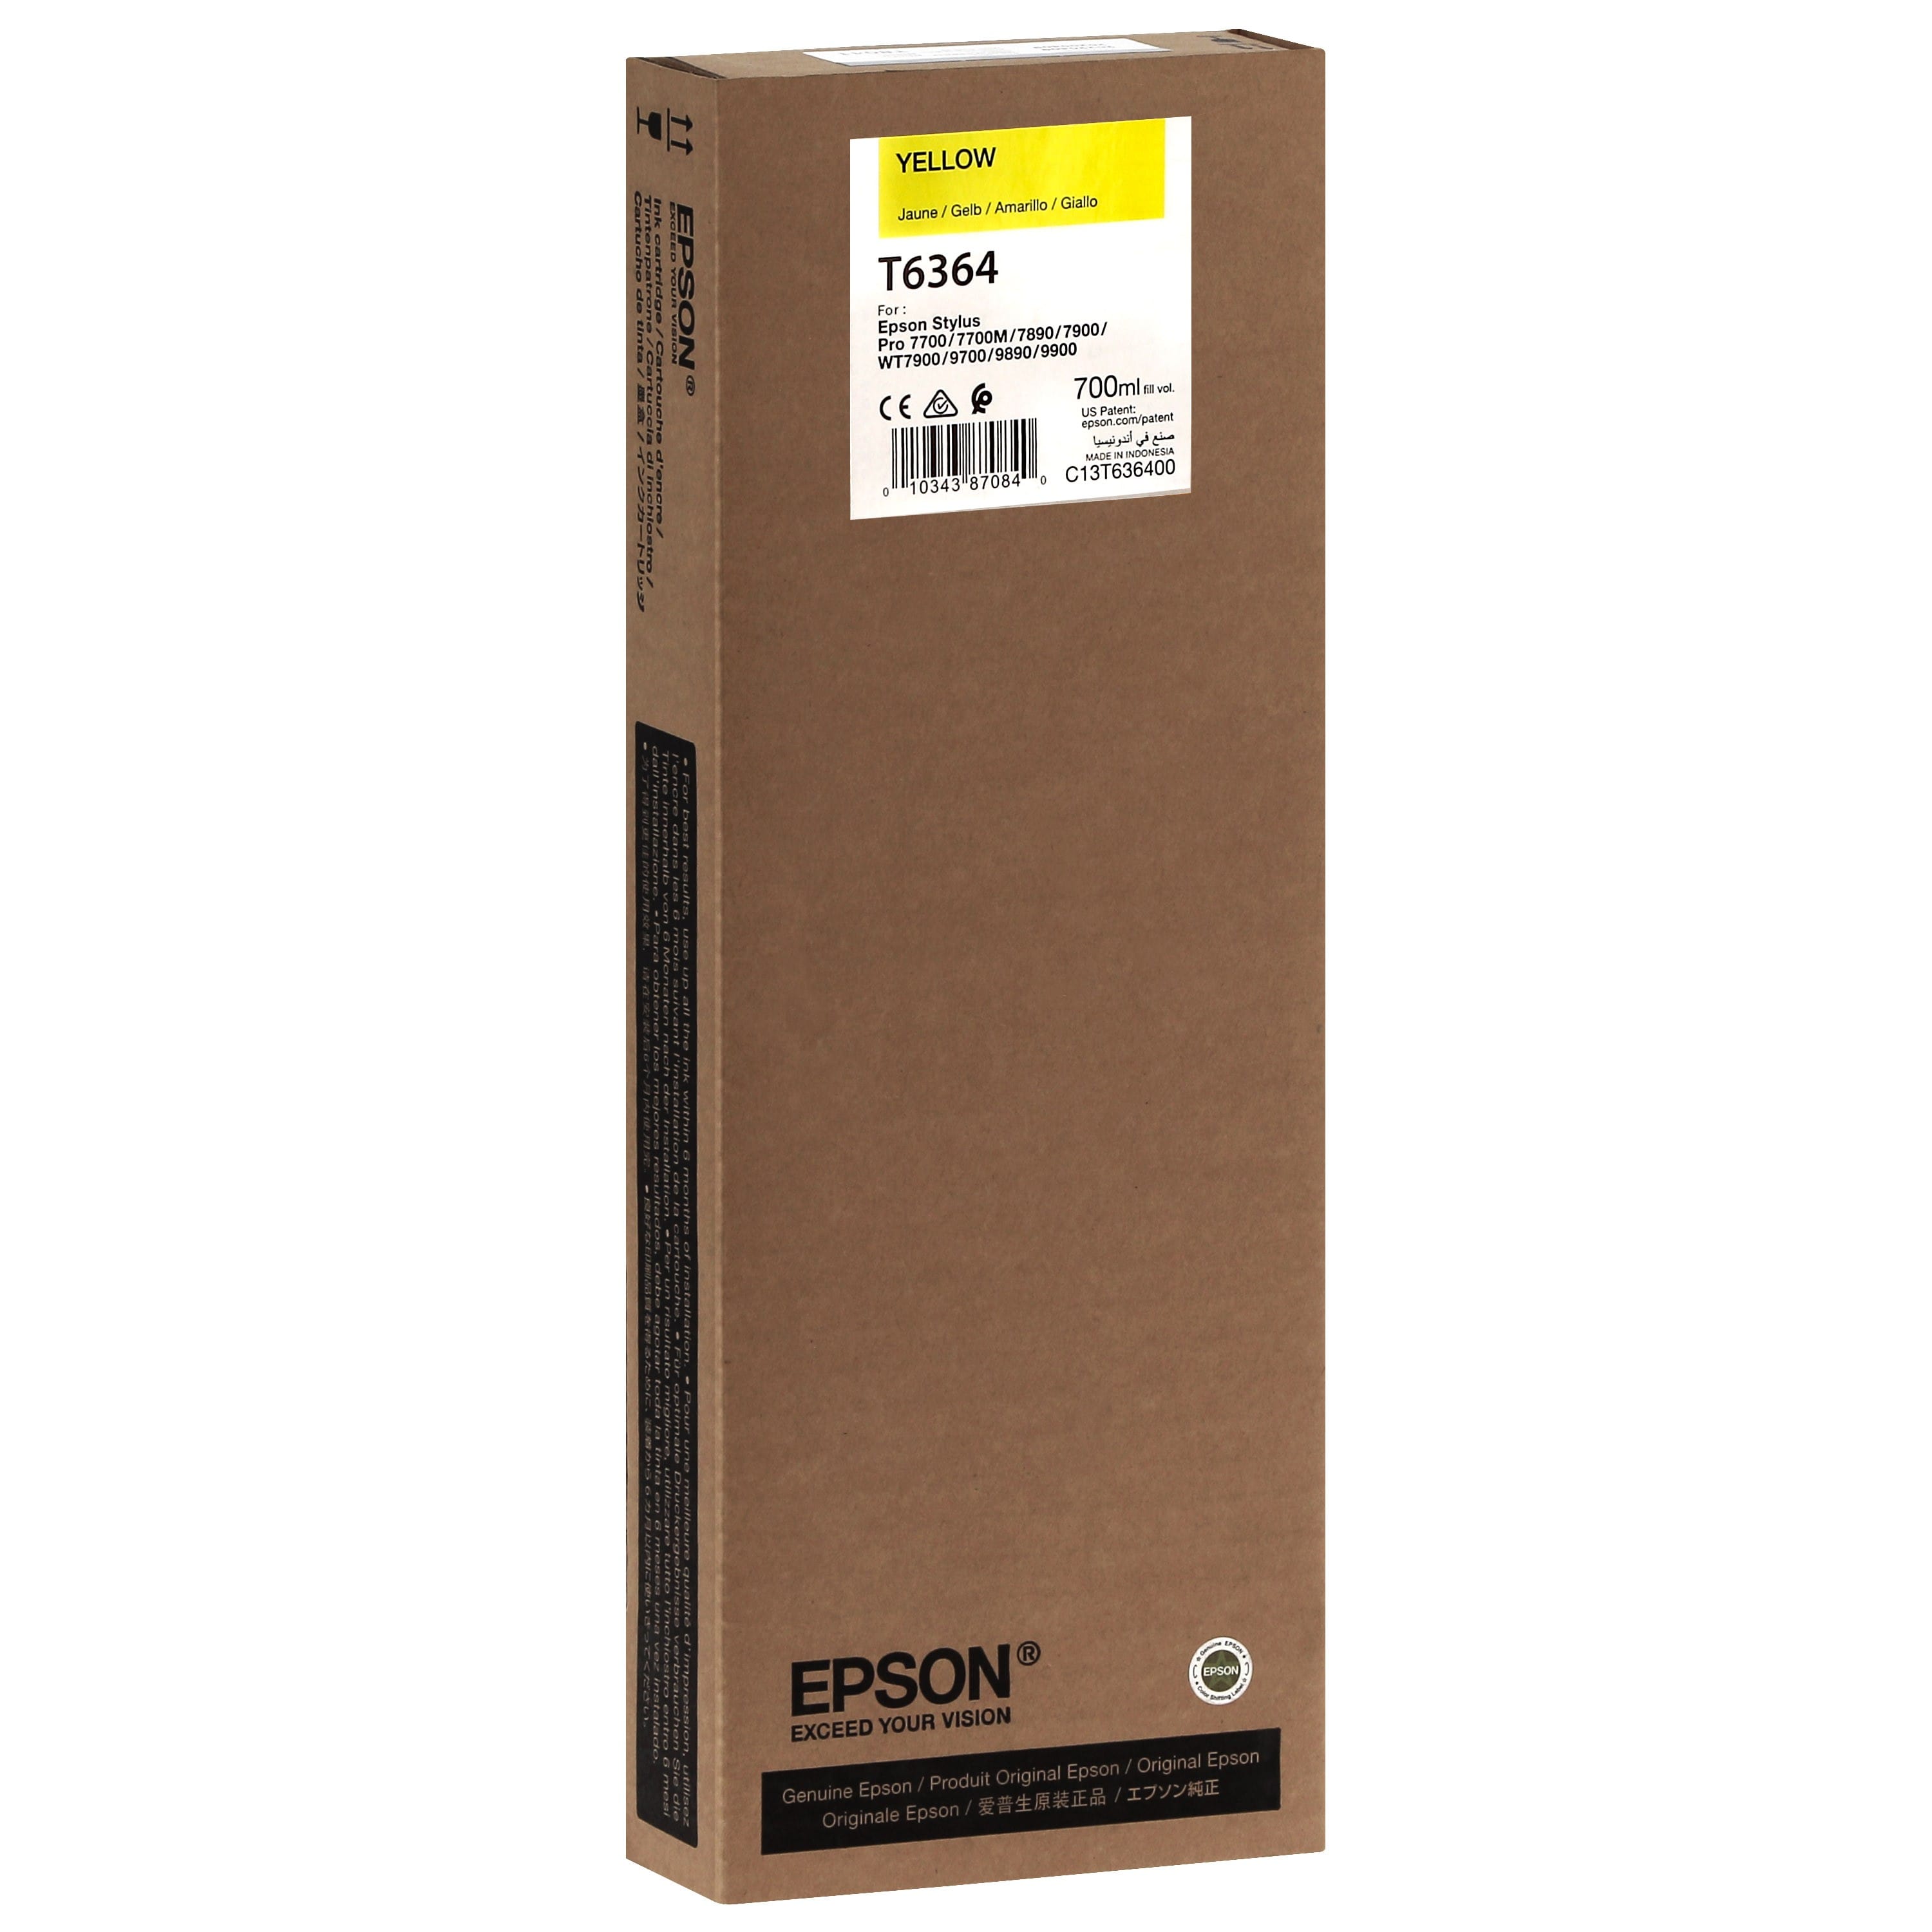 EPSON - Cartouche d'encre traceur T6364 Pour imprimante 7700/9700/7890/9890/7900/9900 Jaune - 700ml